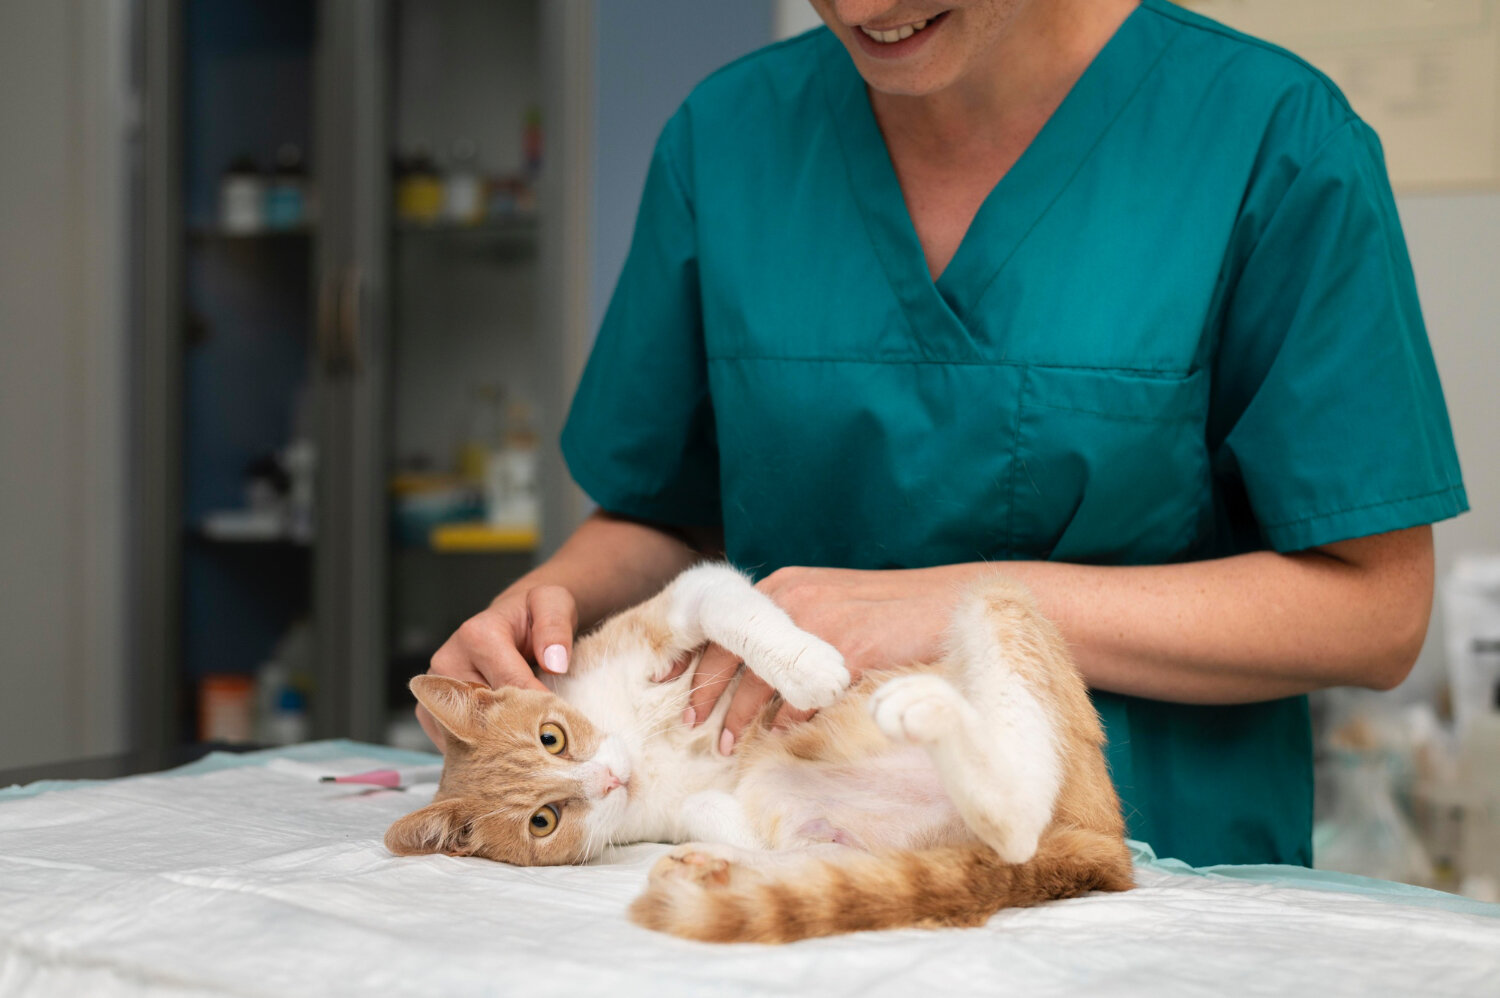 veteriner hekim tarafından kontrol edilen kedi